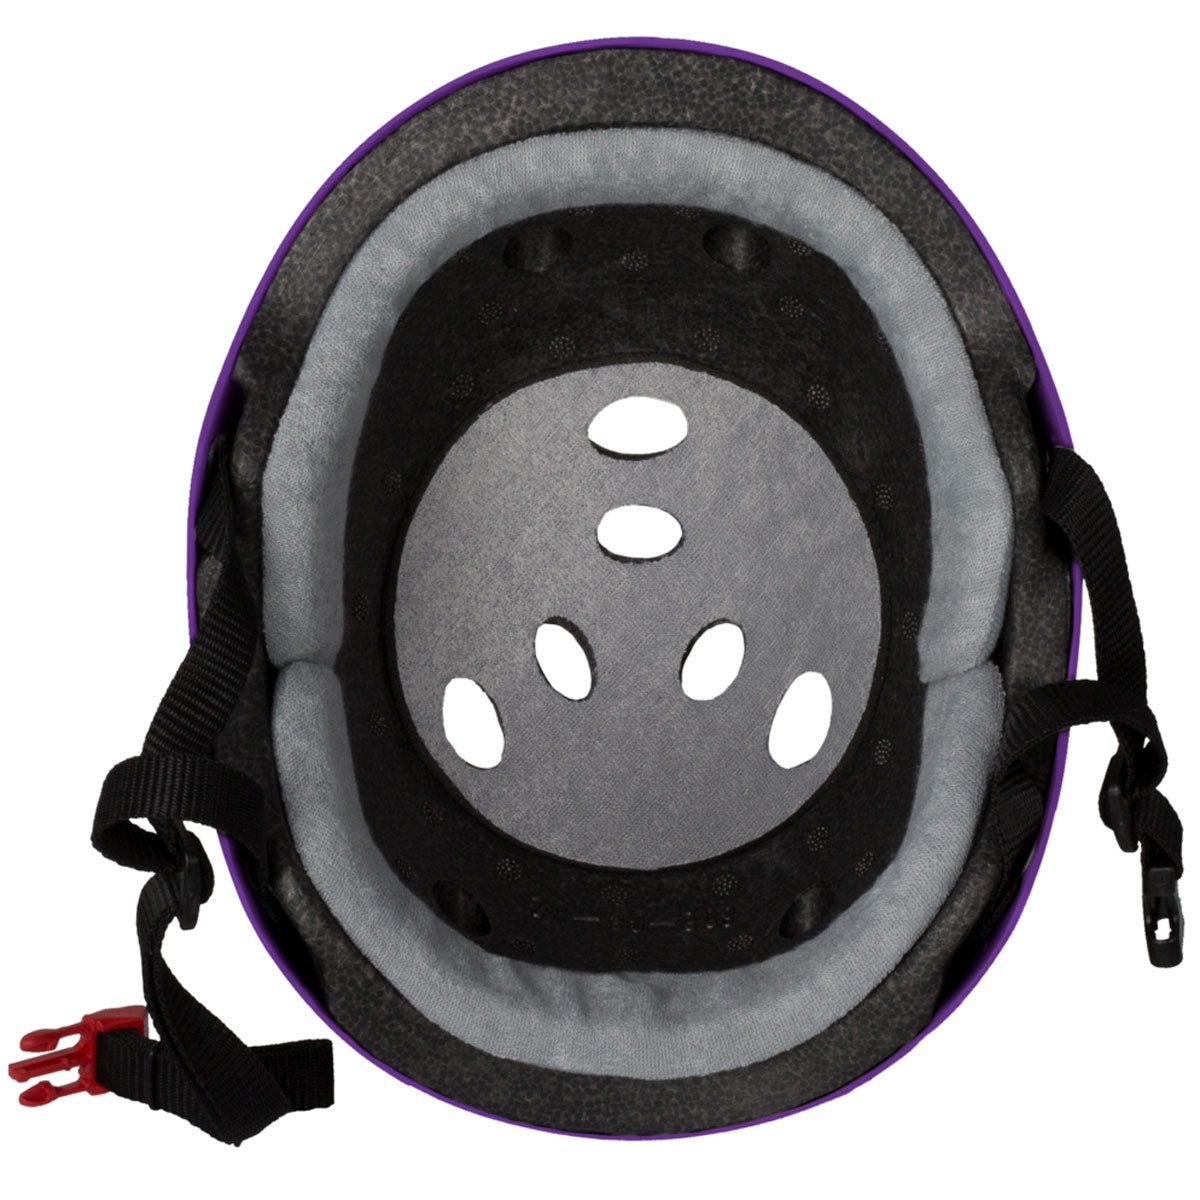 Triple Eight Certified Sweatsaver Helmet - Purple Gloss image 3